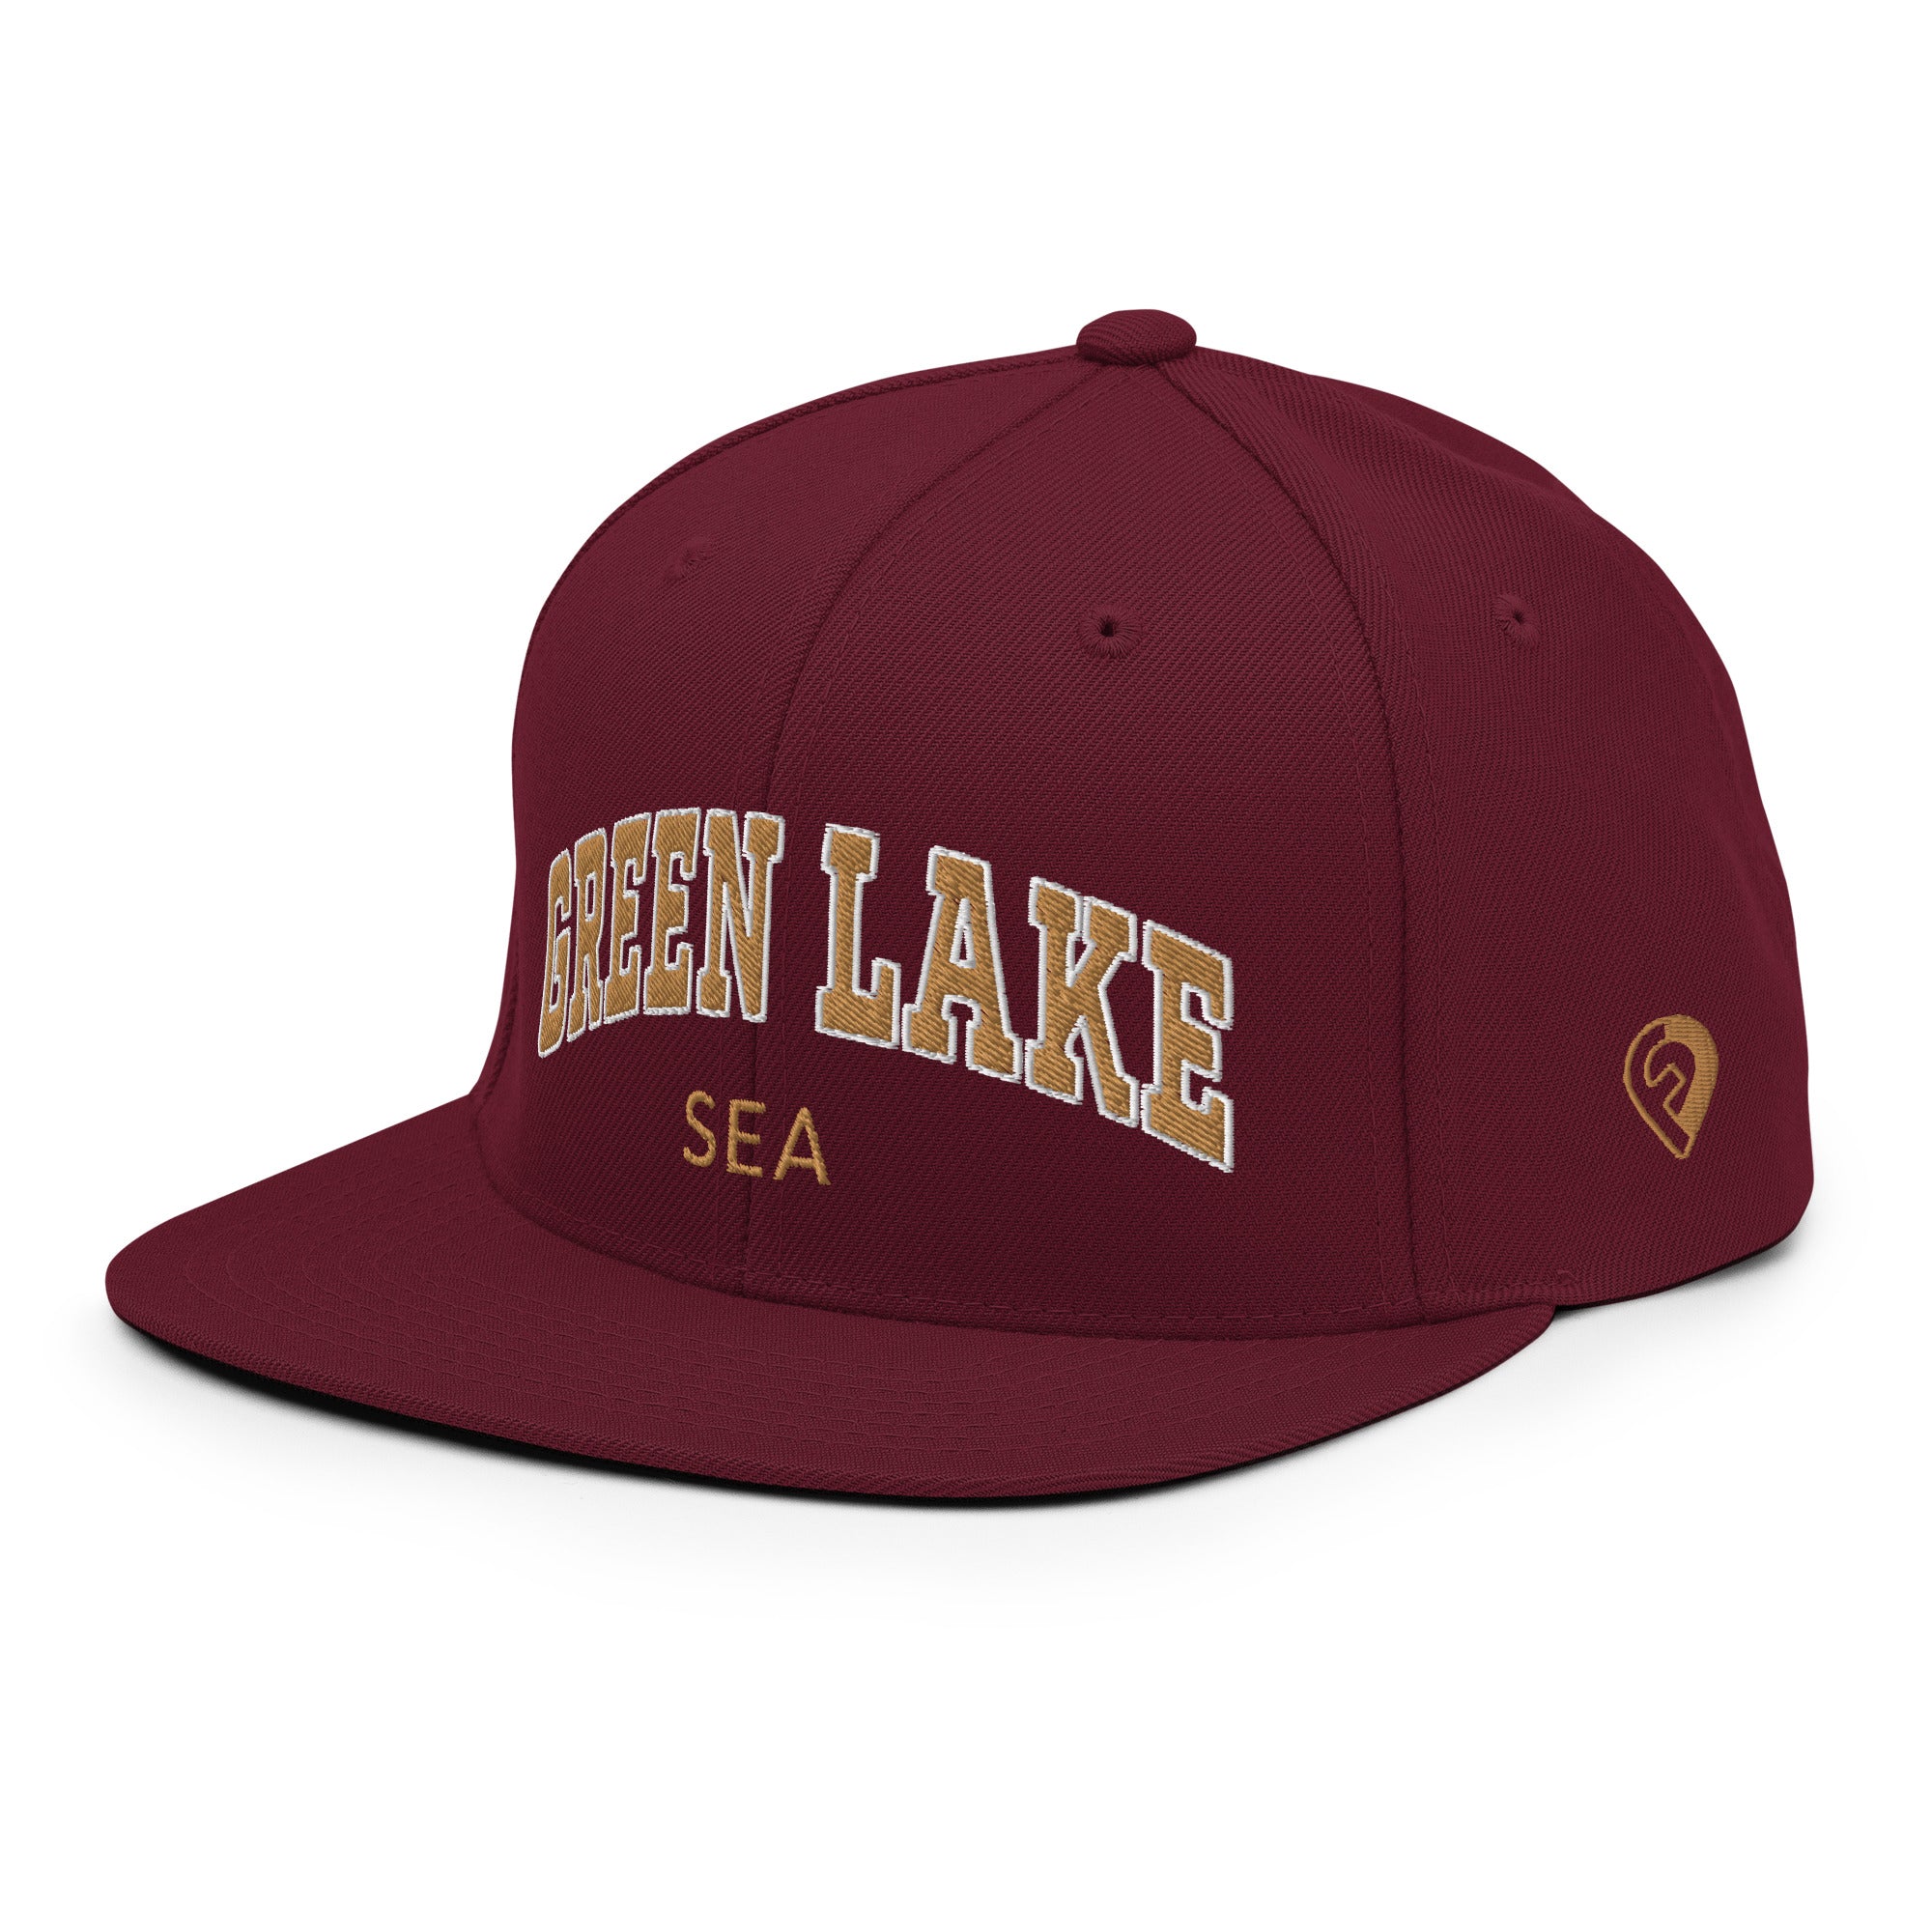 Bold Snapback Hat - Green Lake | Seattle, WA